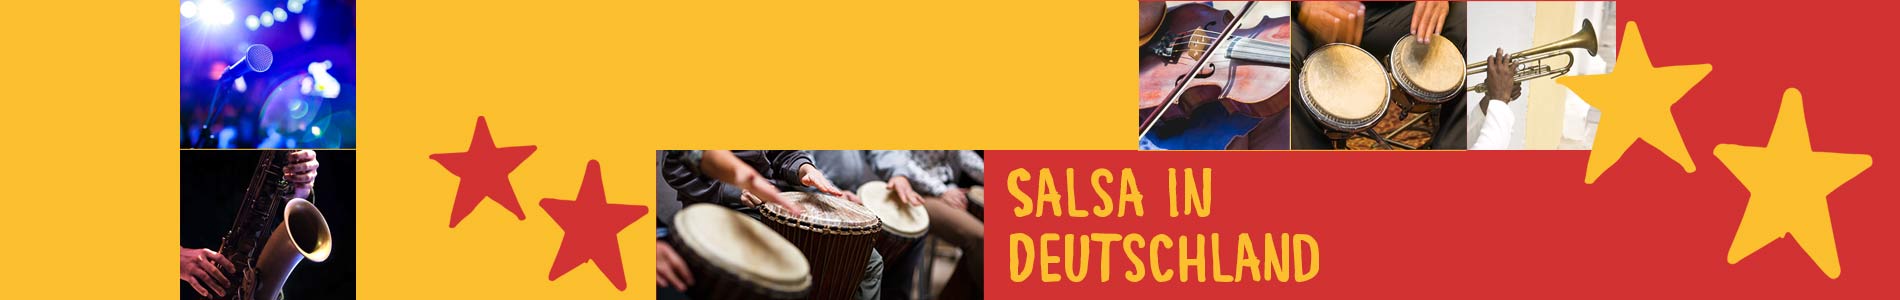 Salsa in Cunewalde – Salsa lernen und tanzen, Tanzkurse, Partys, Veranstaltungen